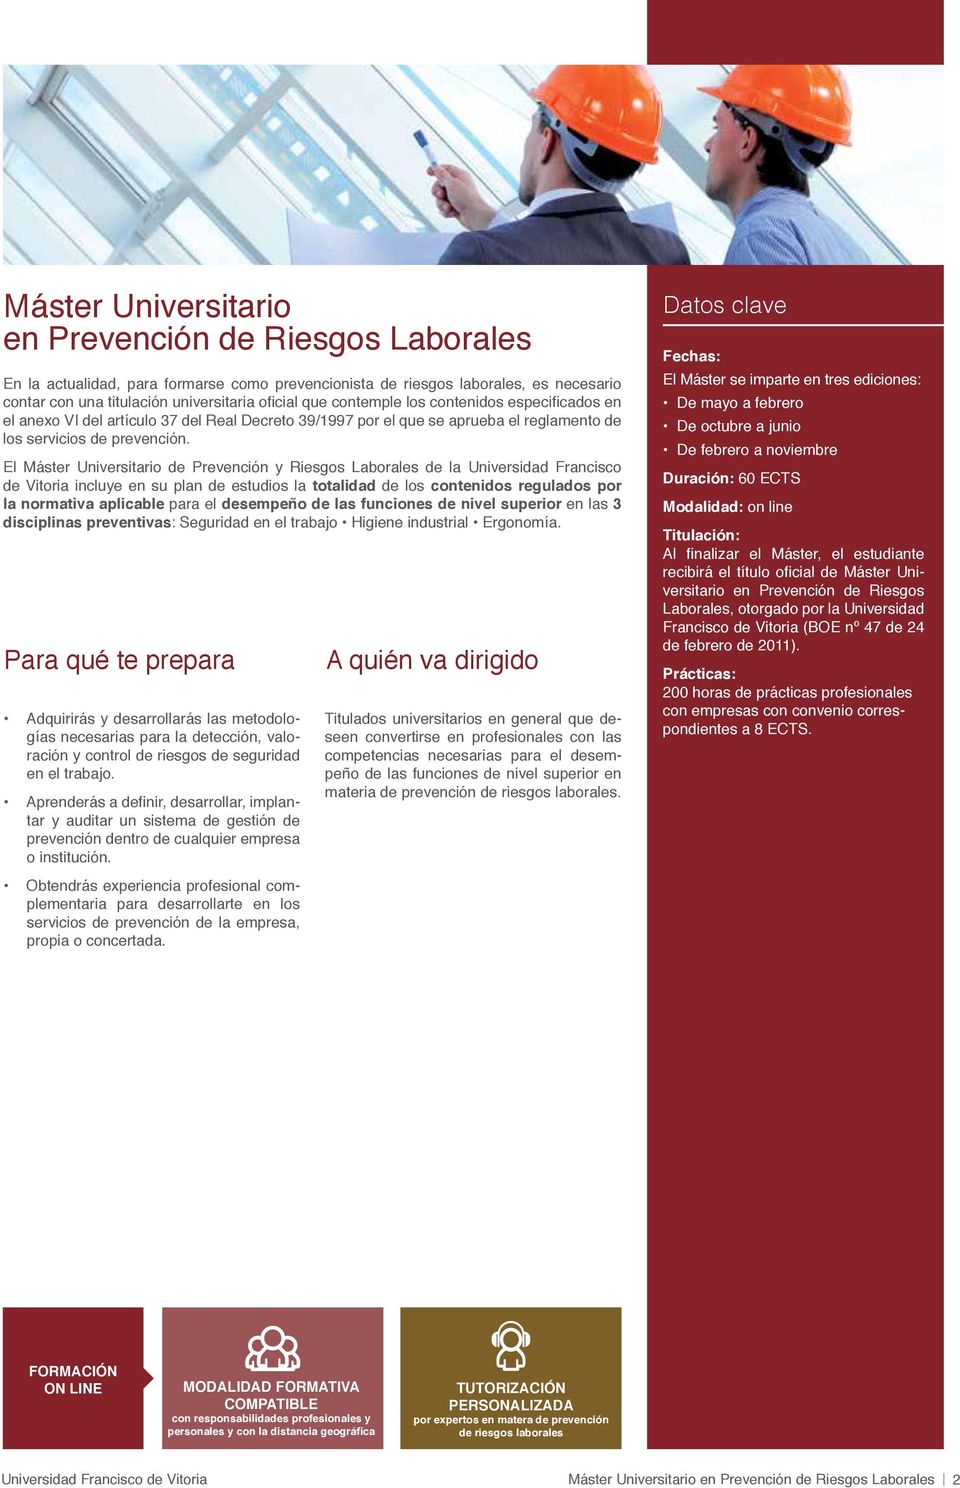 El Máster Universitario de Prevención y Riesgos Laborales de la Universidad Francisco de Vitoria incluye en su plan de estudios la totalidad de los contenidos regulados por la normativa aplicable